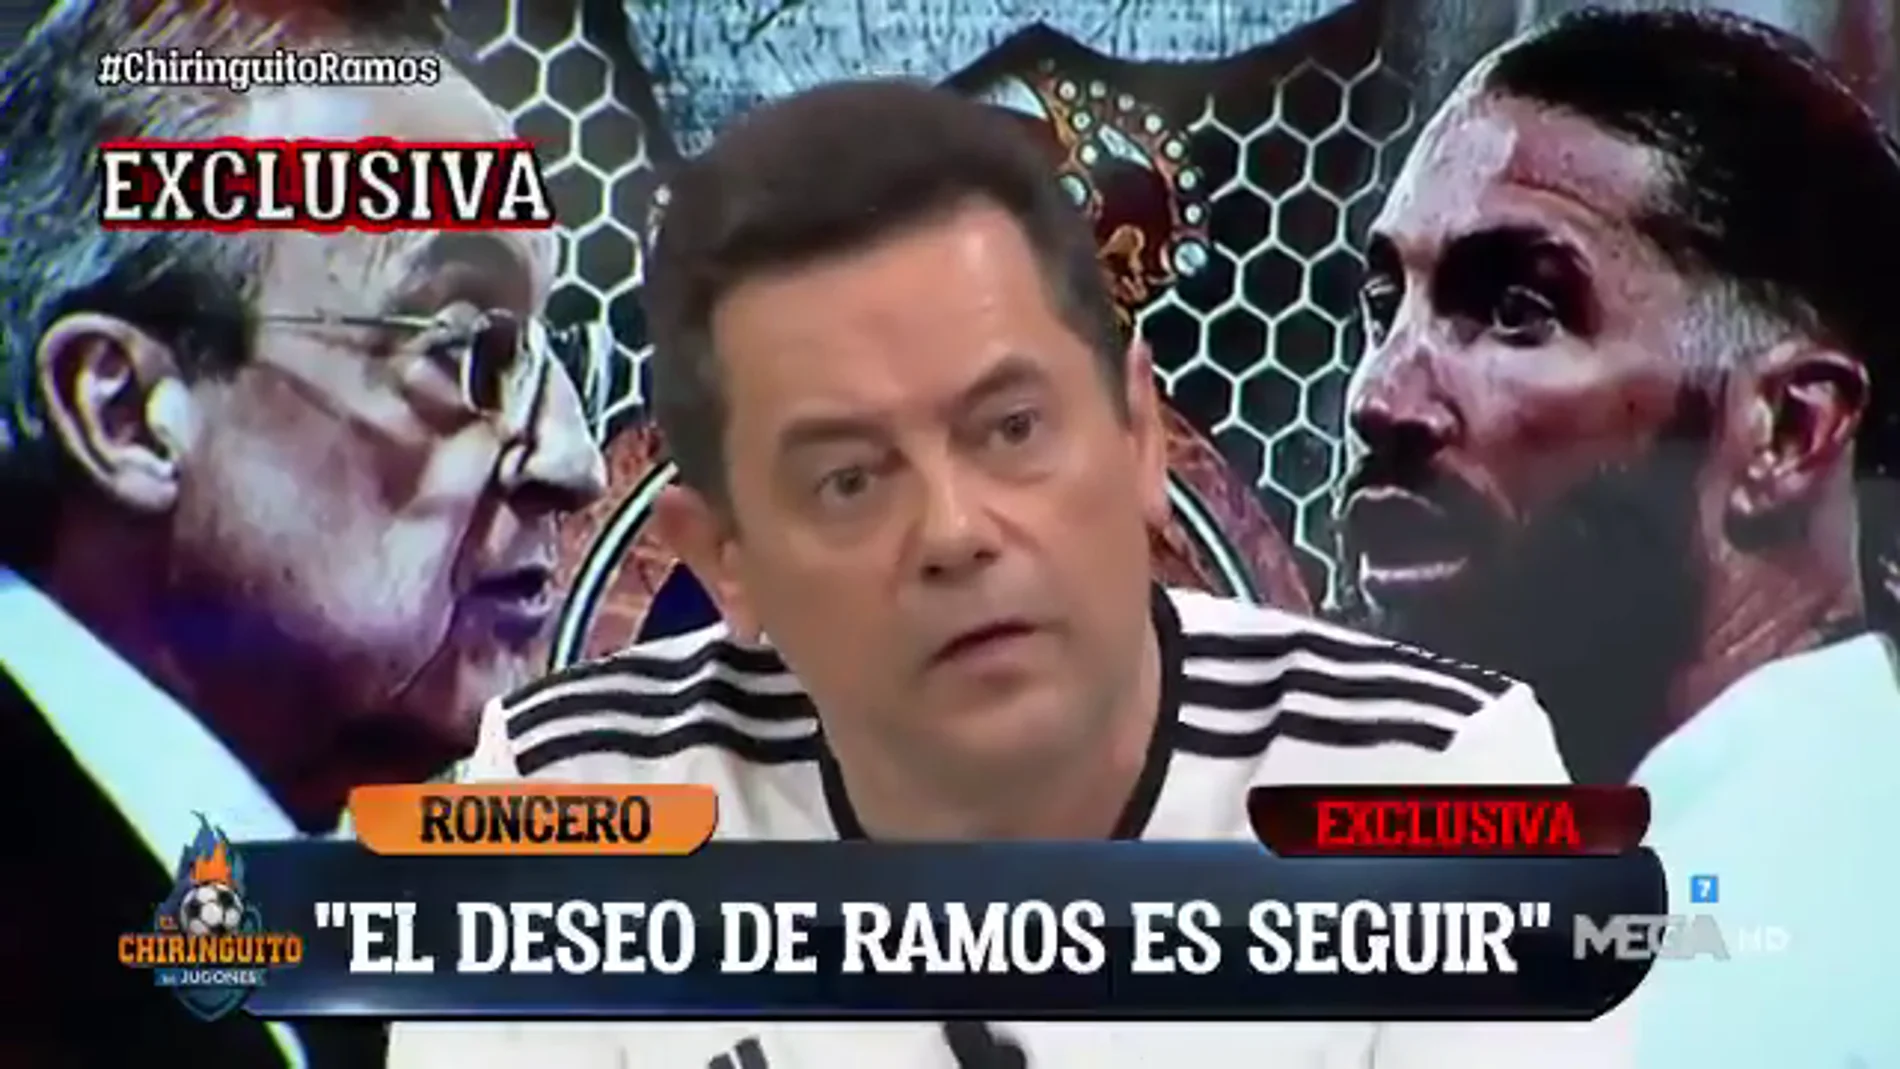 Sergio Ramos a Tomás Roncero: "Quiero quedarme en el Madrid pero no depende de mi"